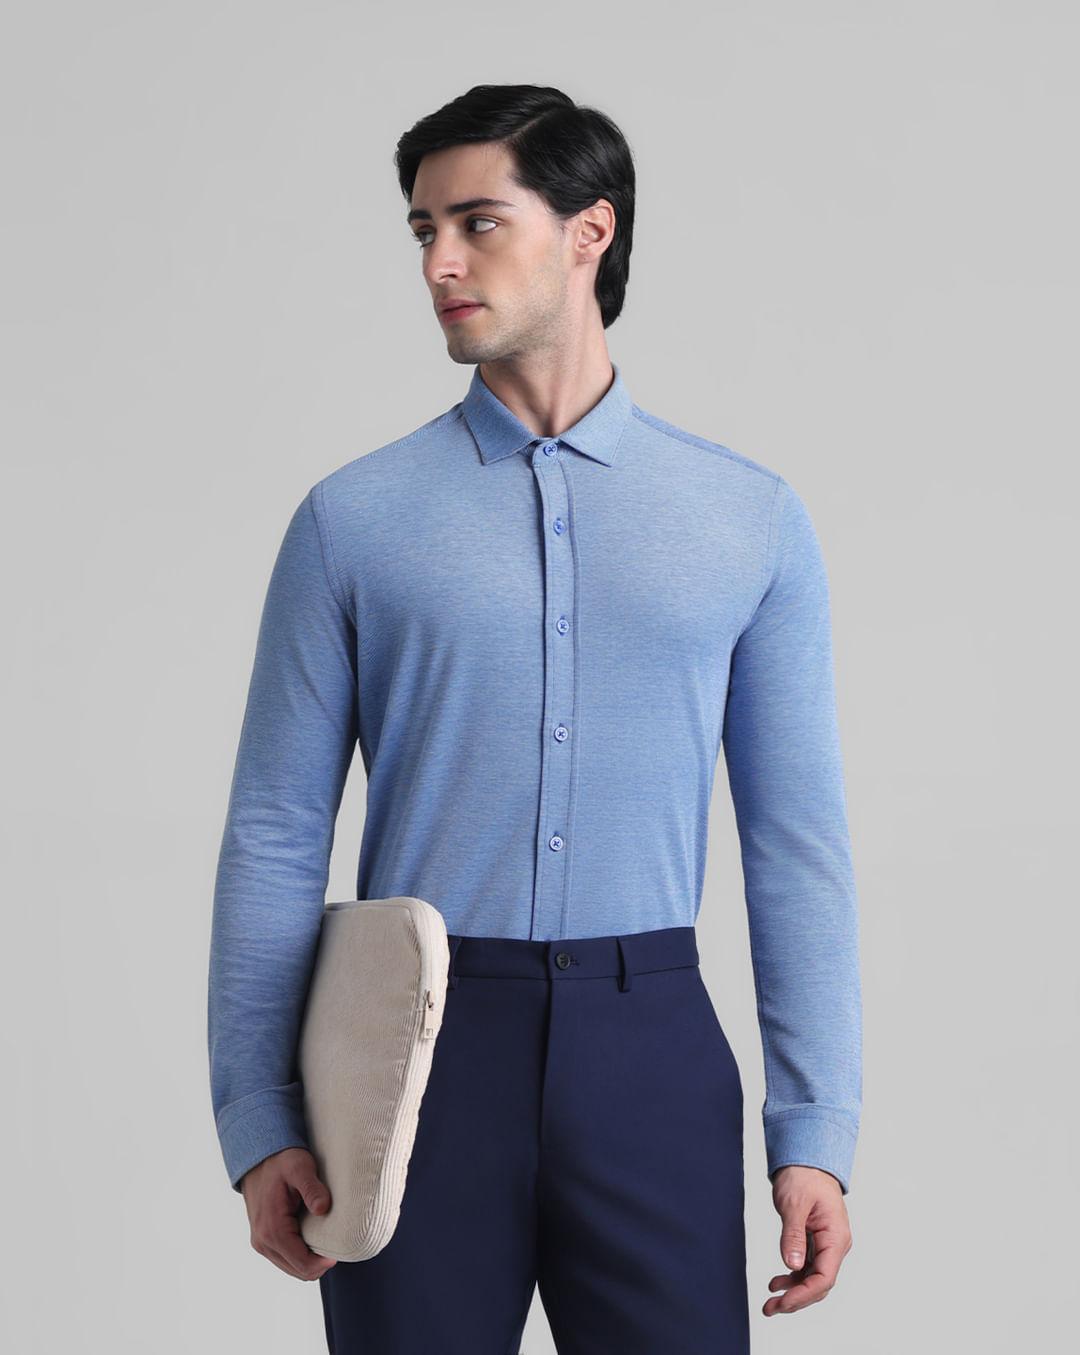 light blue knitted full sleeves shirt